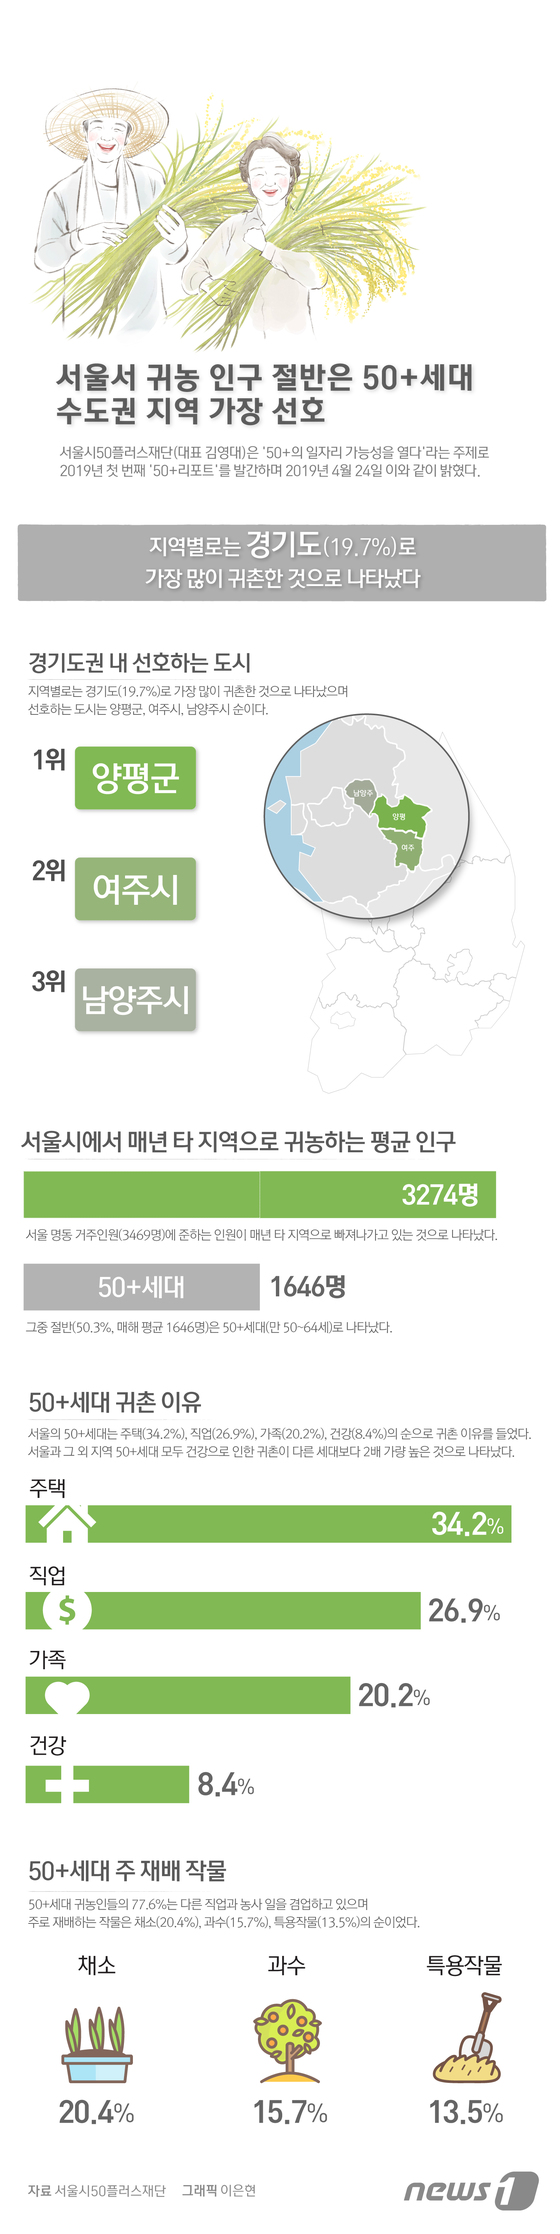 [그래픽뉴스] 50+세대 귀농 인구 수 증가